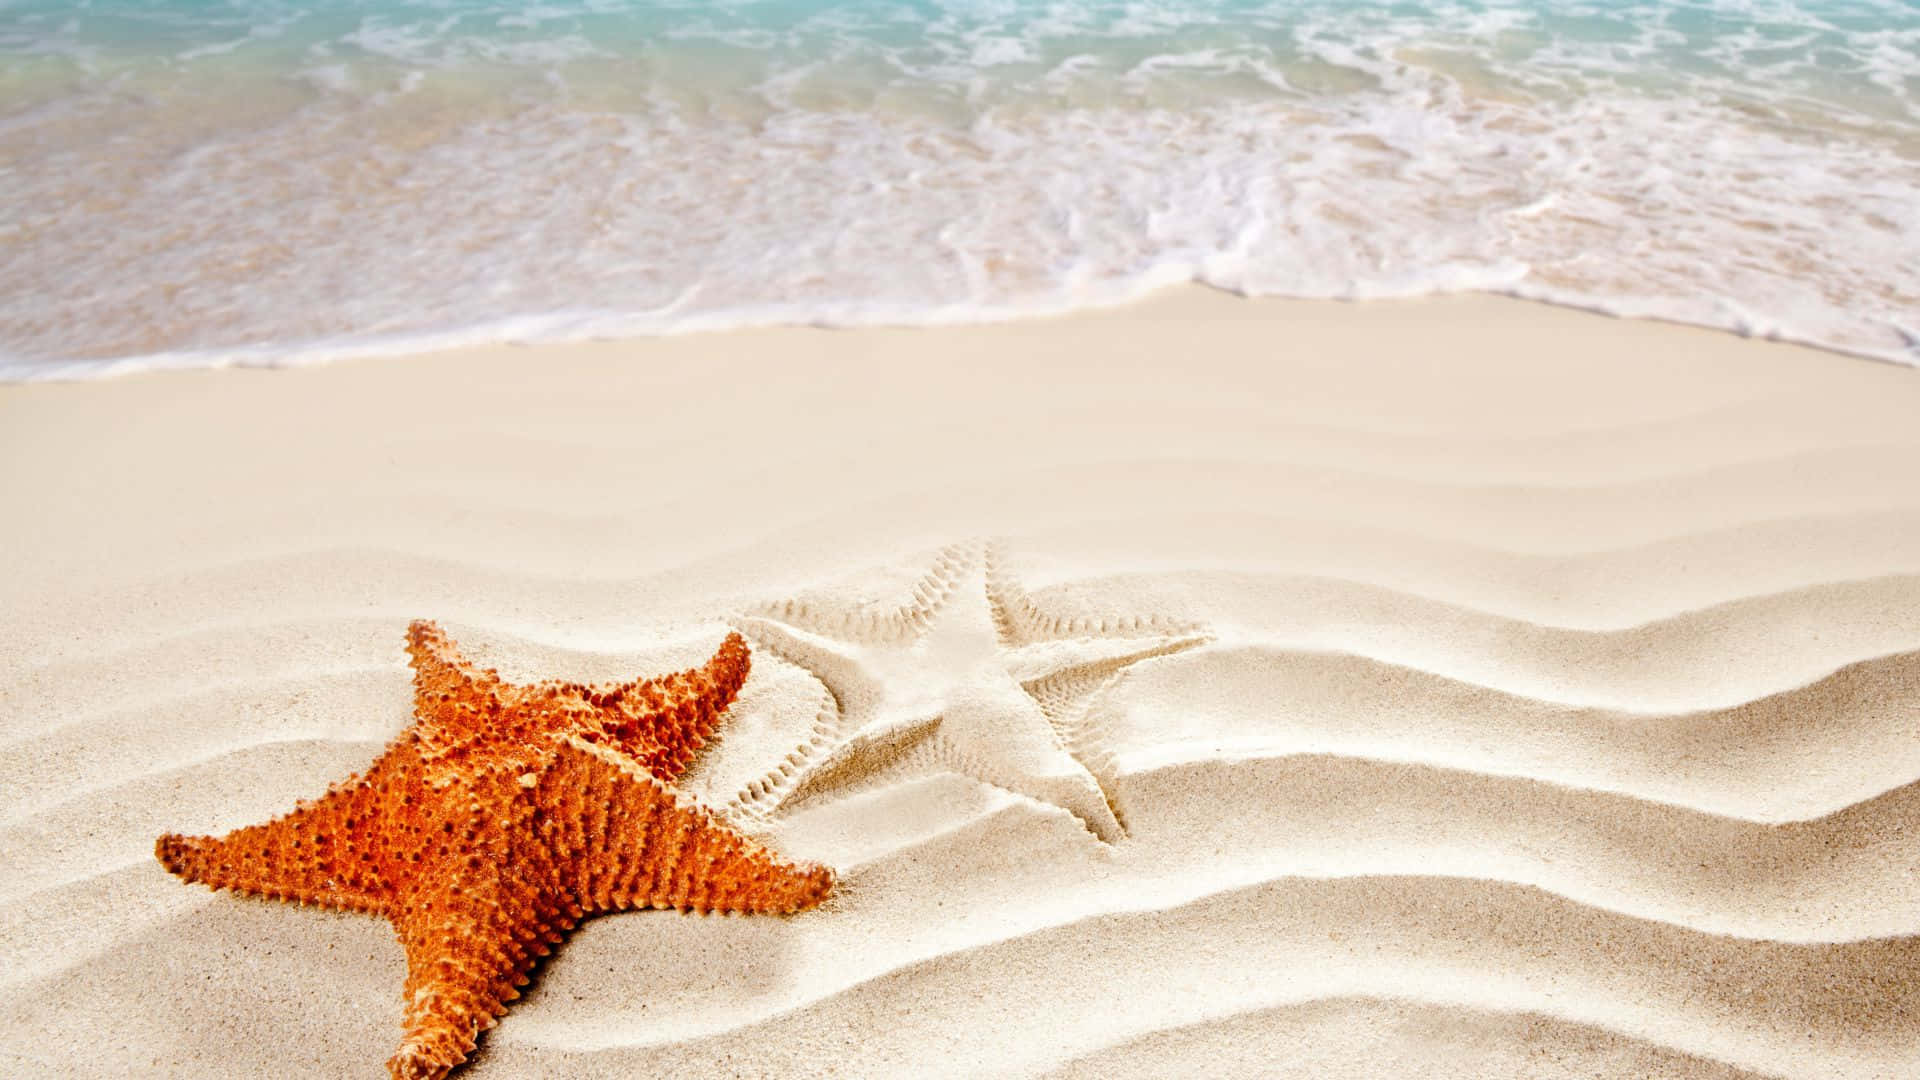 Yellow-Orange Starfish on the Beach